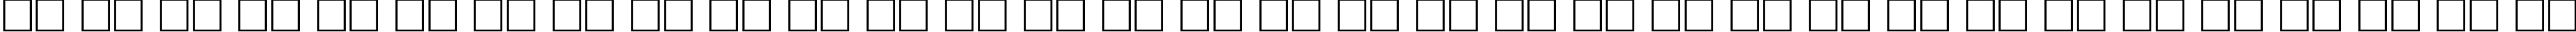 Пример написания русского алфавита шрифтом LugaAd Bold Oblique